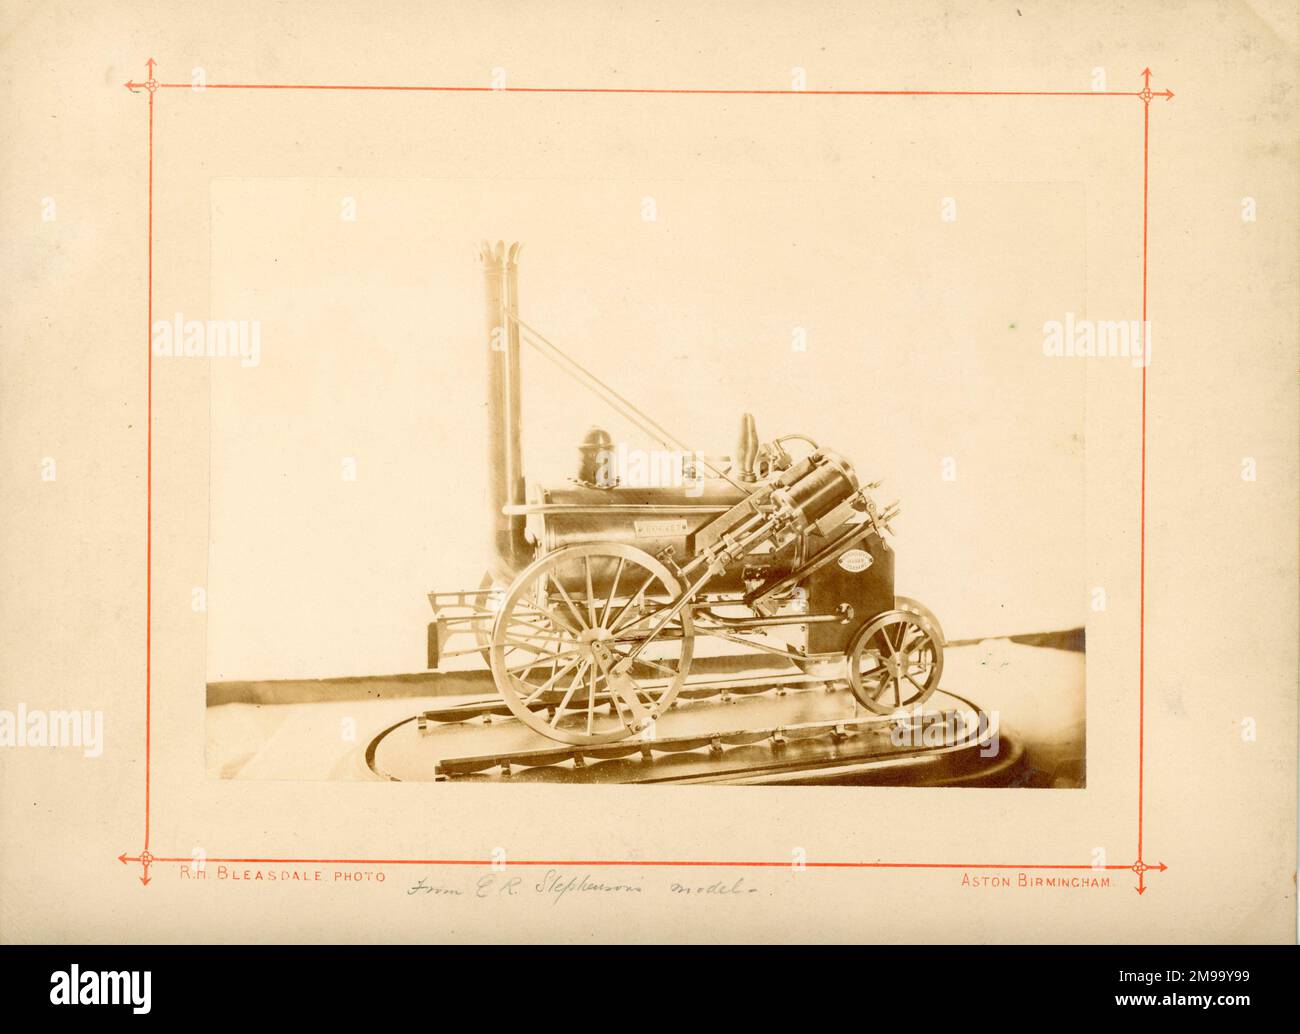 Modèle de locomotive de fusée. Propriété de George Robert Stephenson, fabriqué en 1829. Répertorié dans LE CATALOGUE DES moteurs de locomotives DE RE Bleasdale, entrée 1268. Prise pour Stephenson Centenary. Banque D'Images